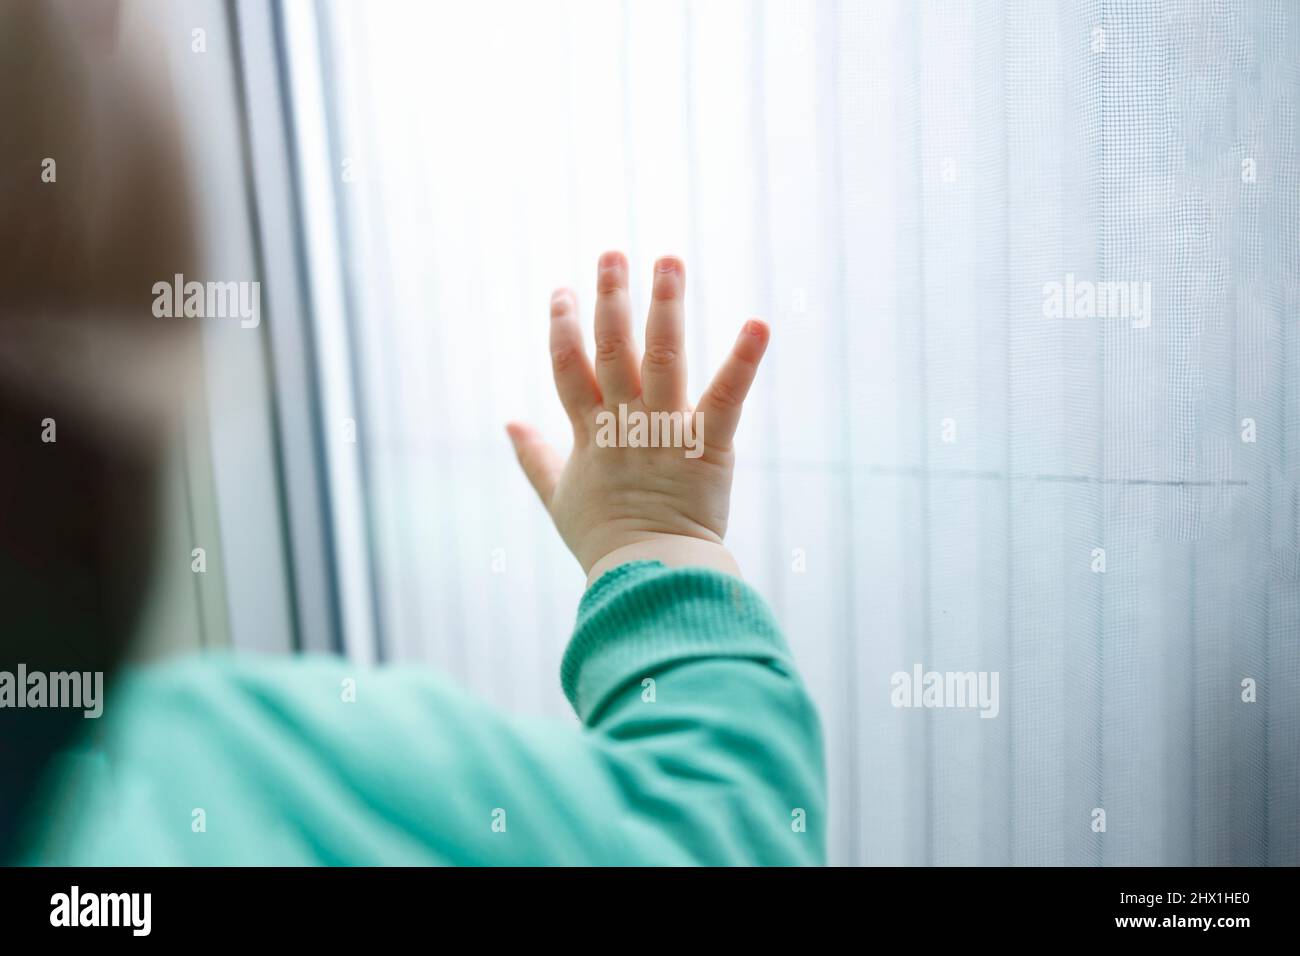 Eine Hand eines kleinen Kindes auf einer weißen Oberfläche, Konzept der humanitären Hilfe Stockfoto